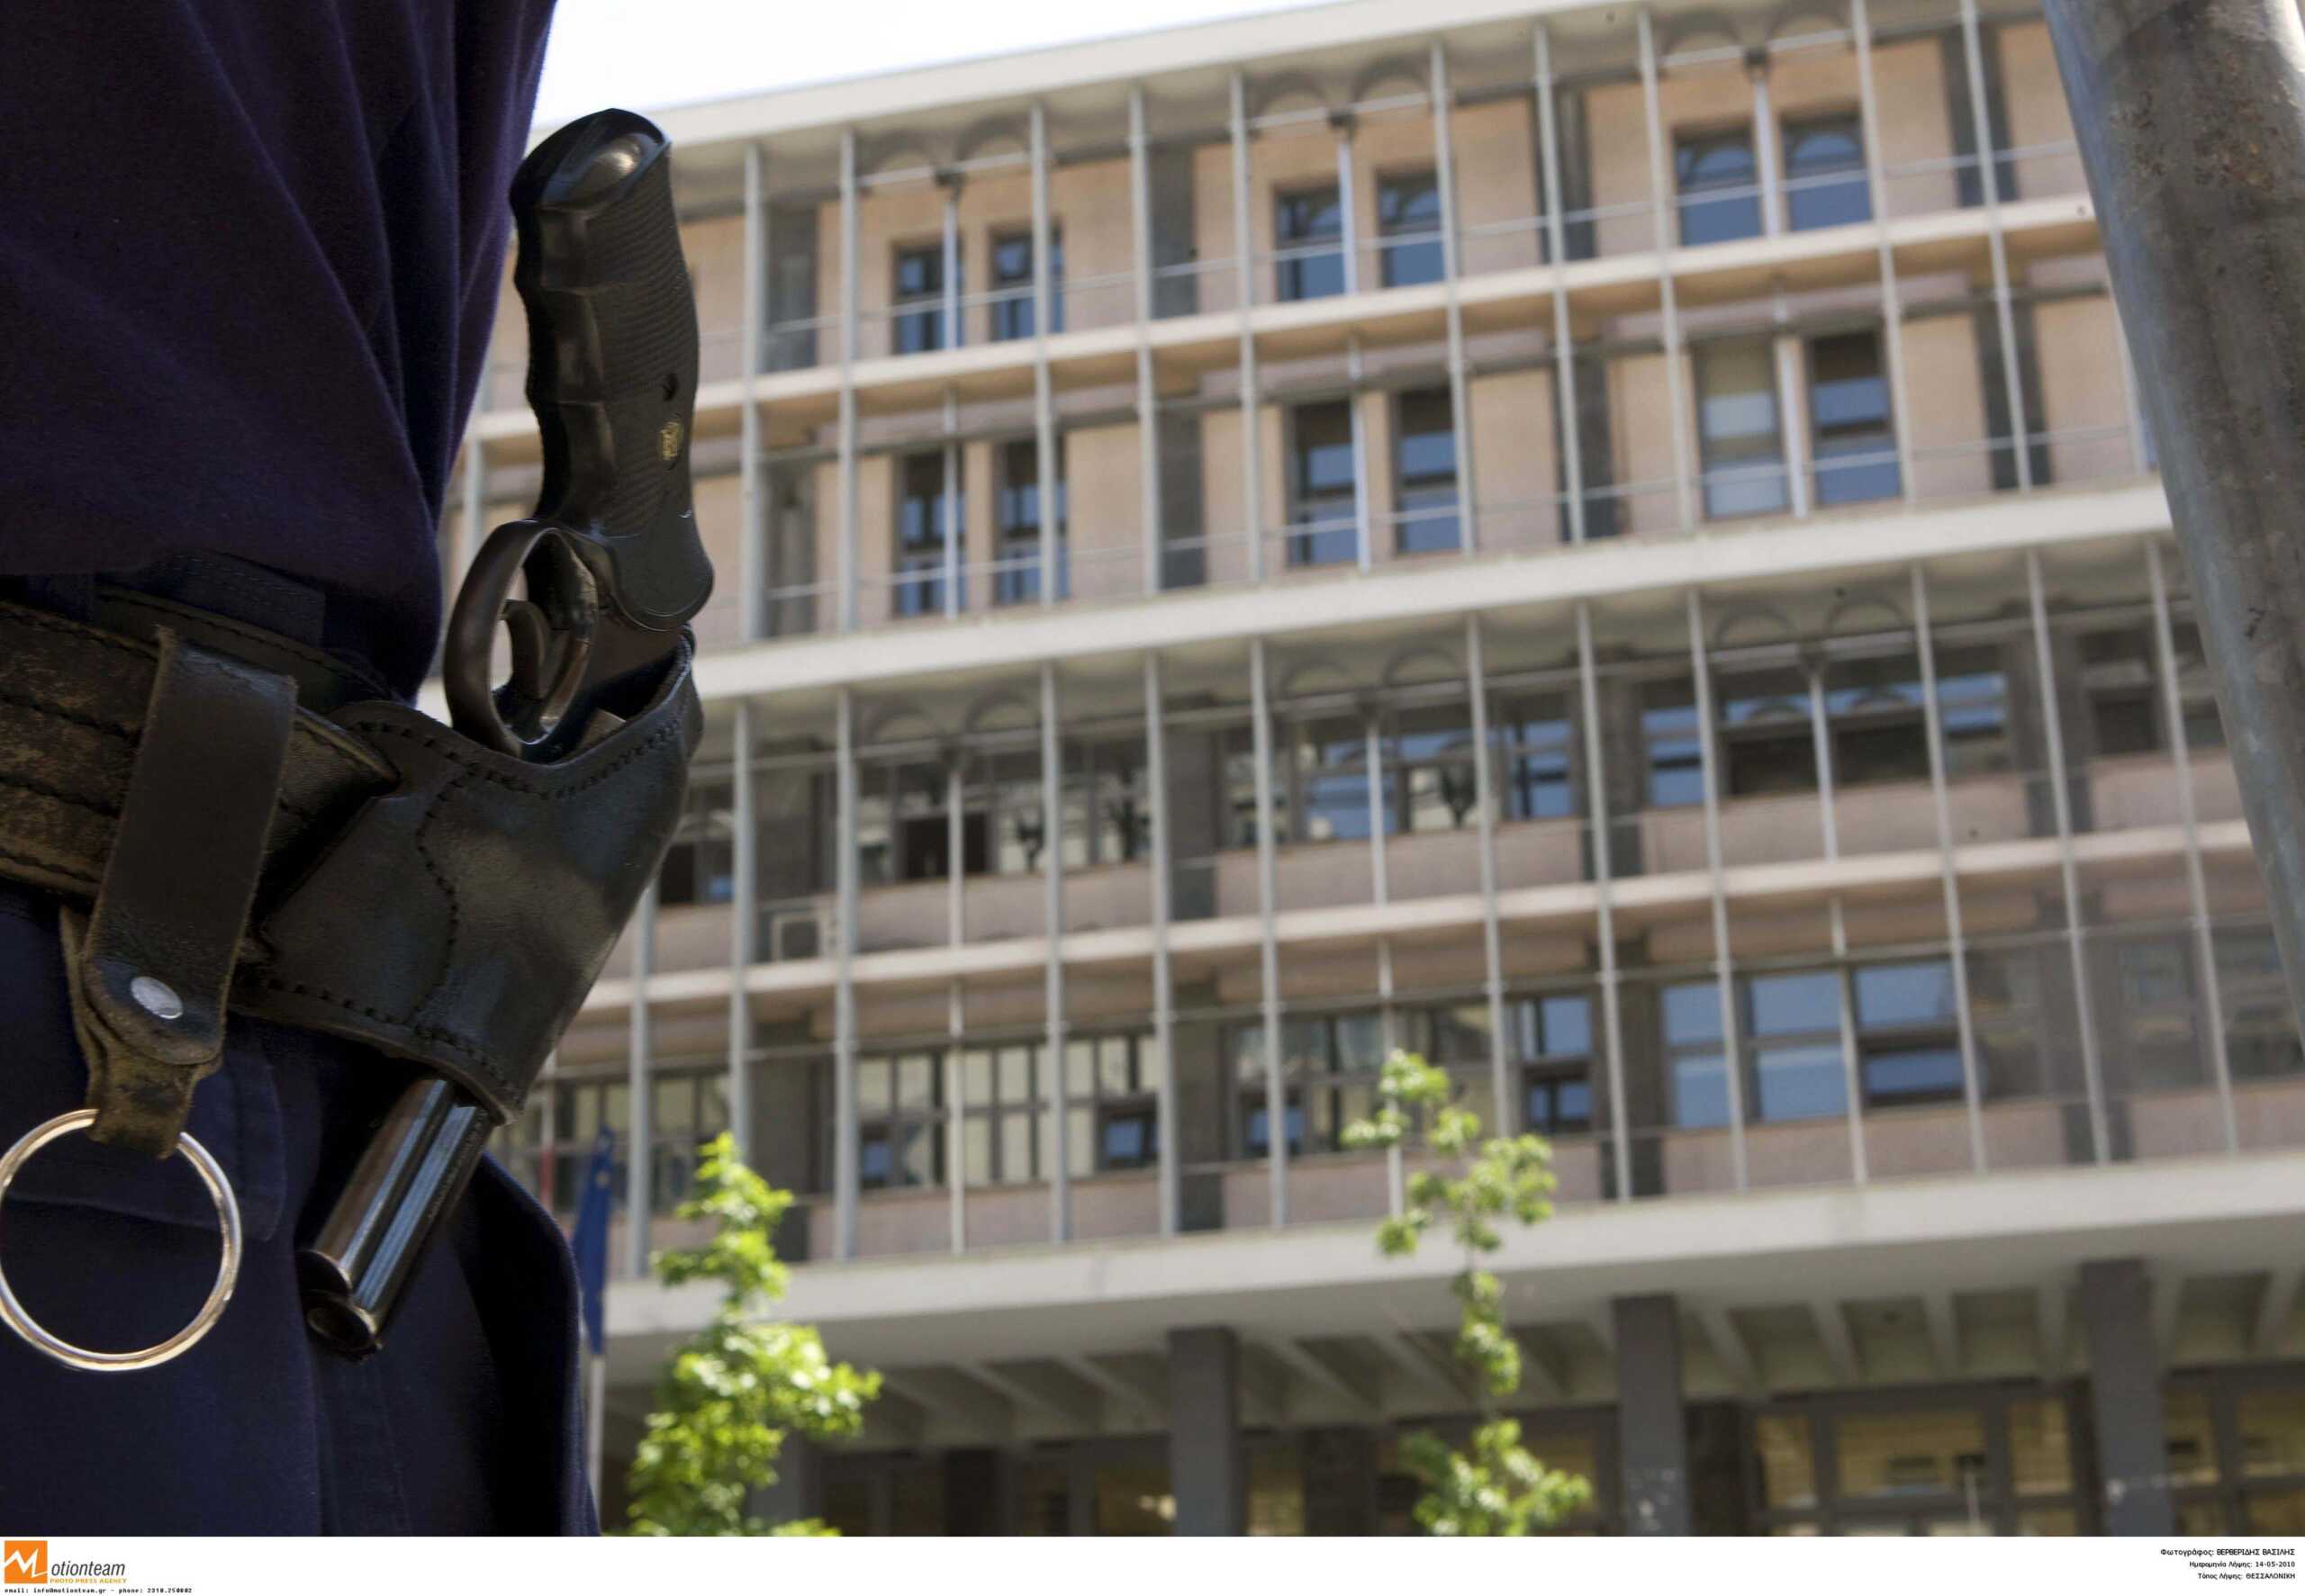 Γιώργος Φλωρίδης για την βόμβα στα δικαστήρια Θεσσαλονίκης: «Σοβαρό το κενό ασφαλείας»